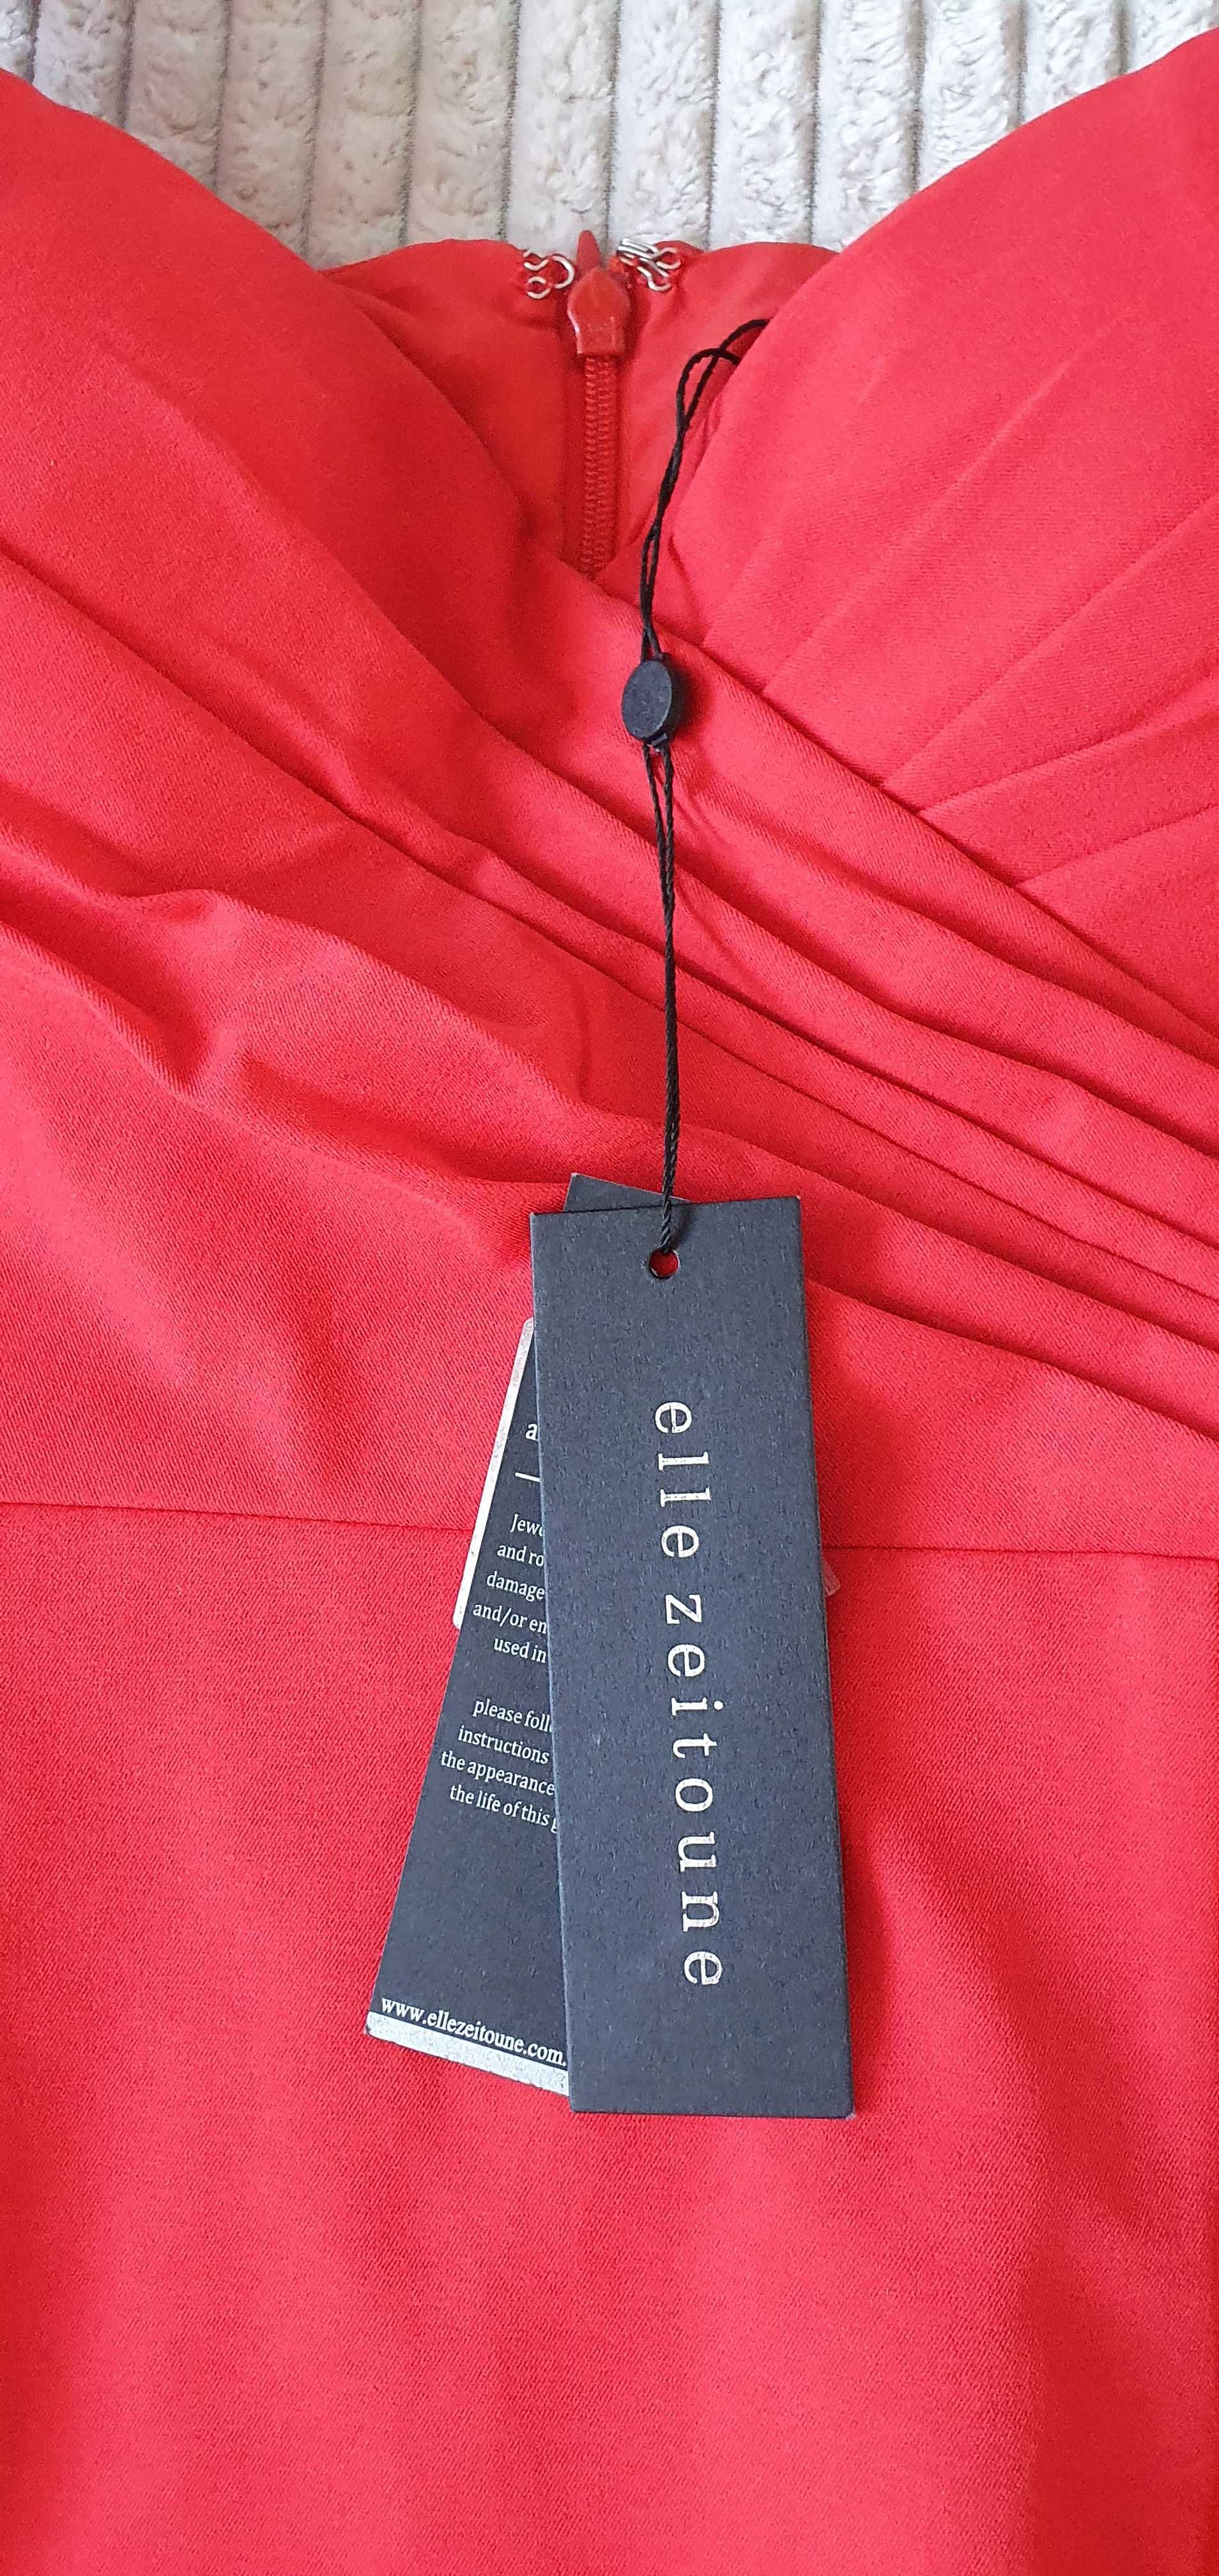 Czerwona sukienka marki elle zeitoune, nowa, rozmiar 42